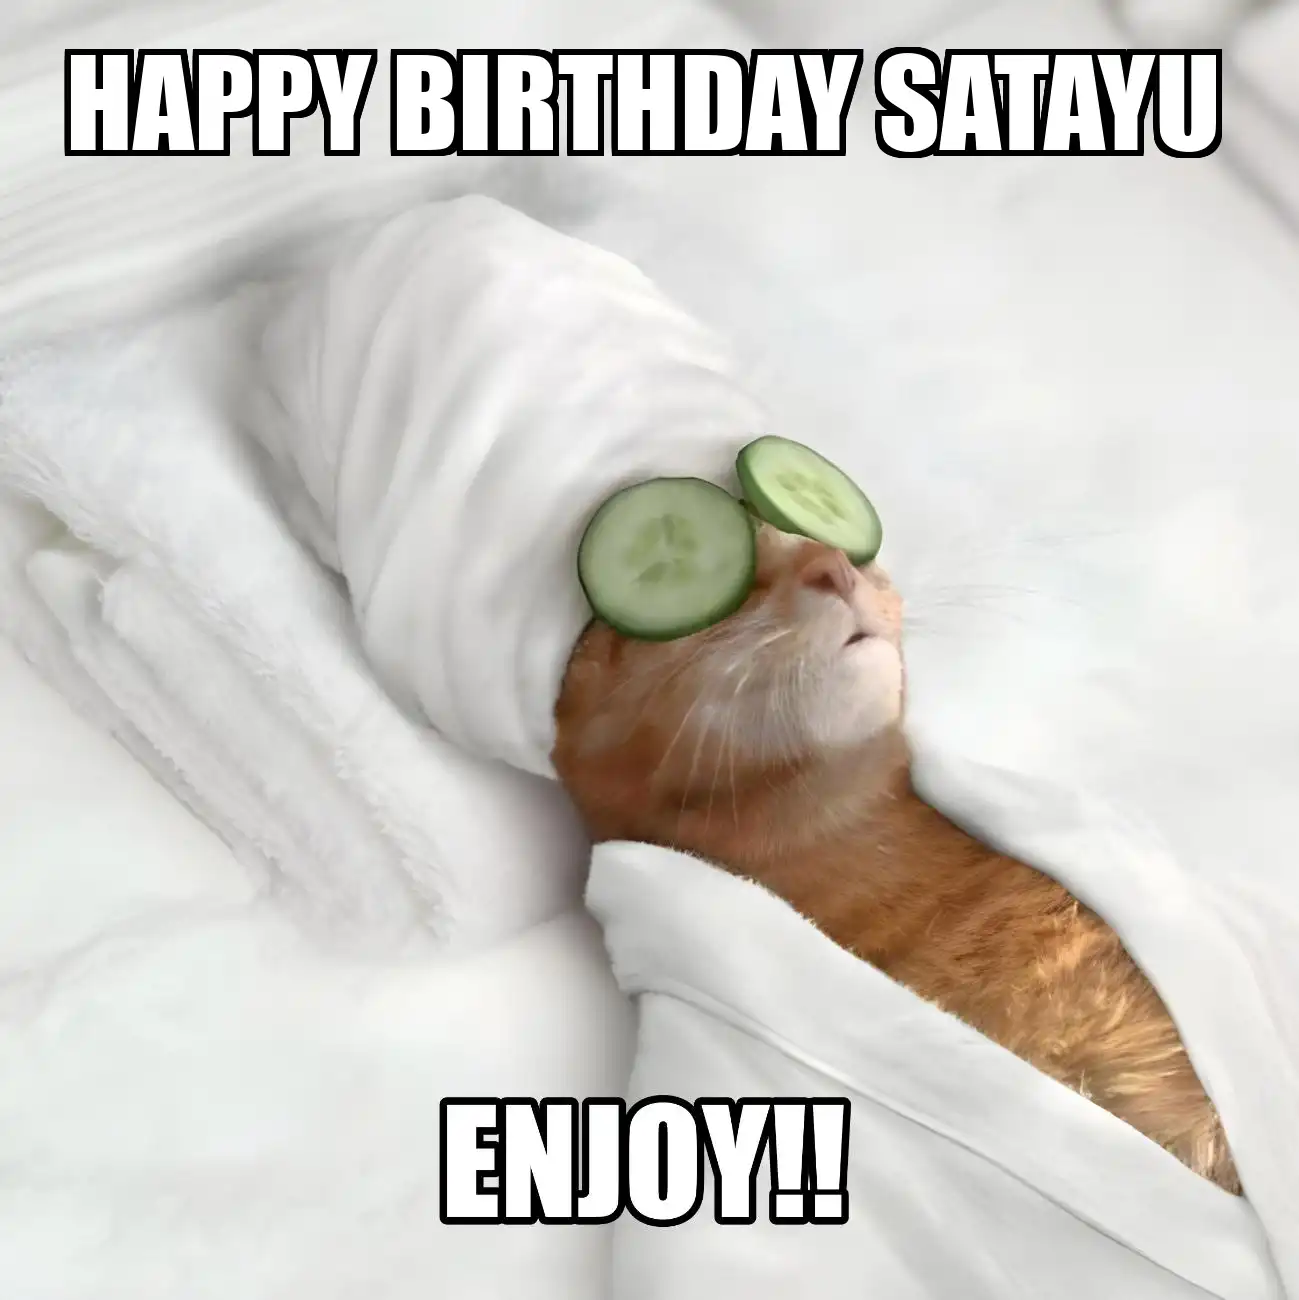 Happy Birthday Satayu Enjoy Cat Meme